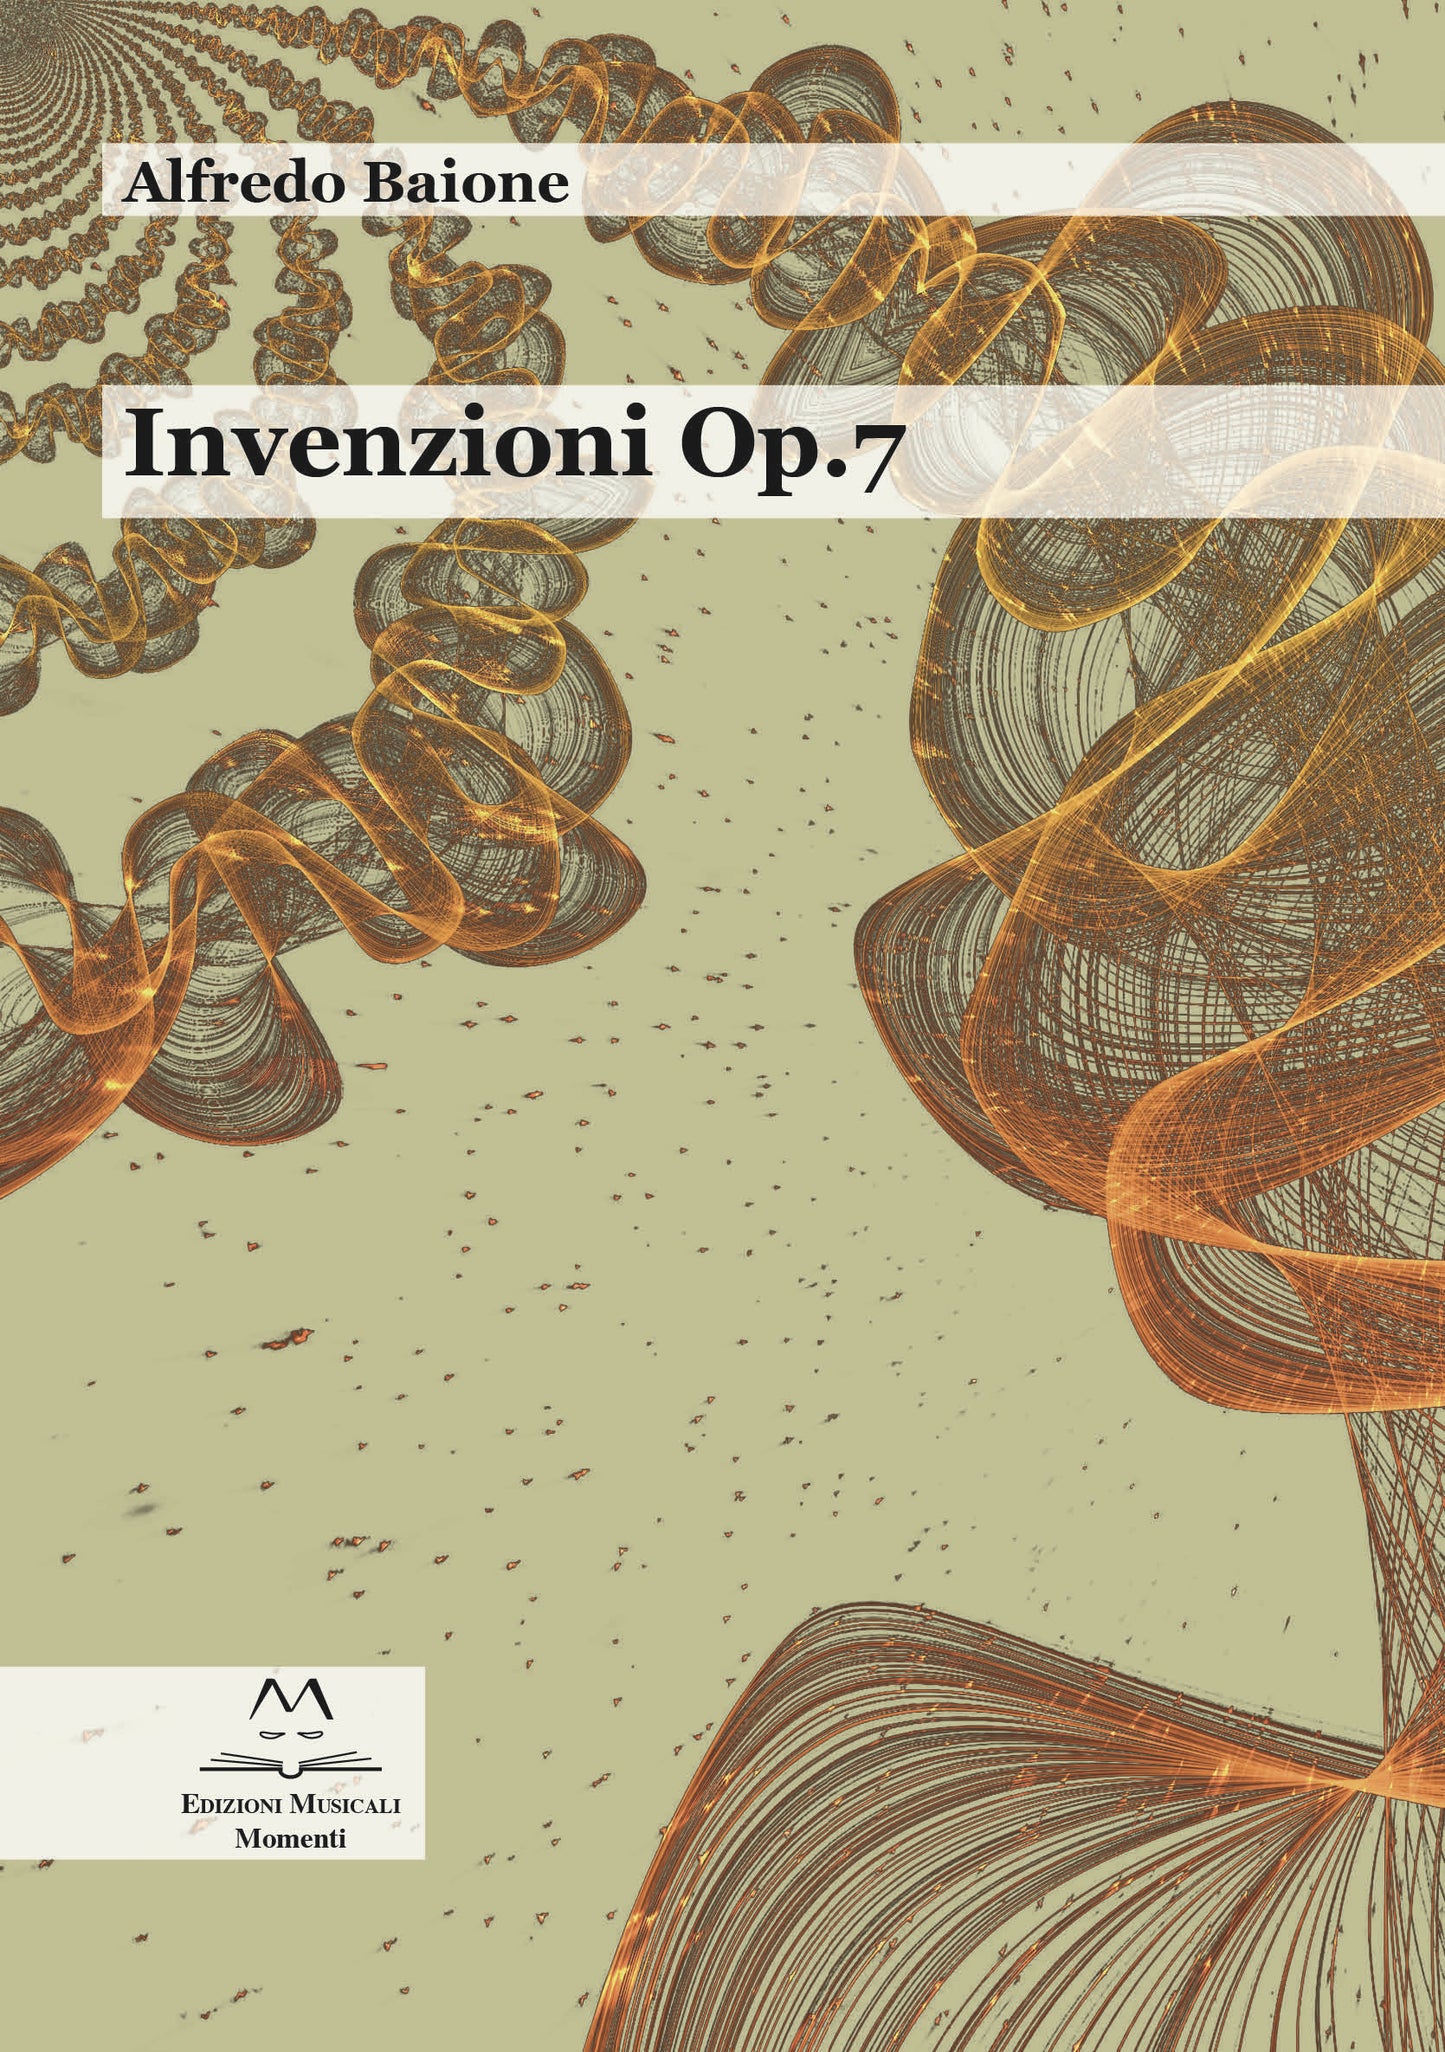 Invenzioni Op.7 di Alfredo Baione